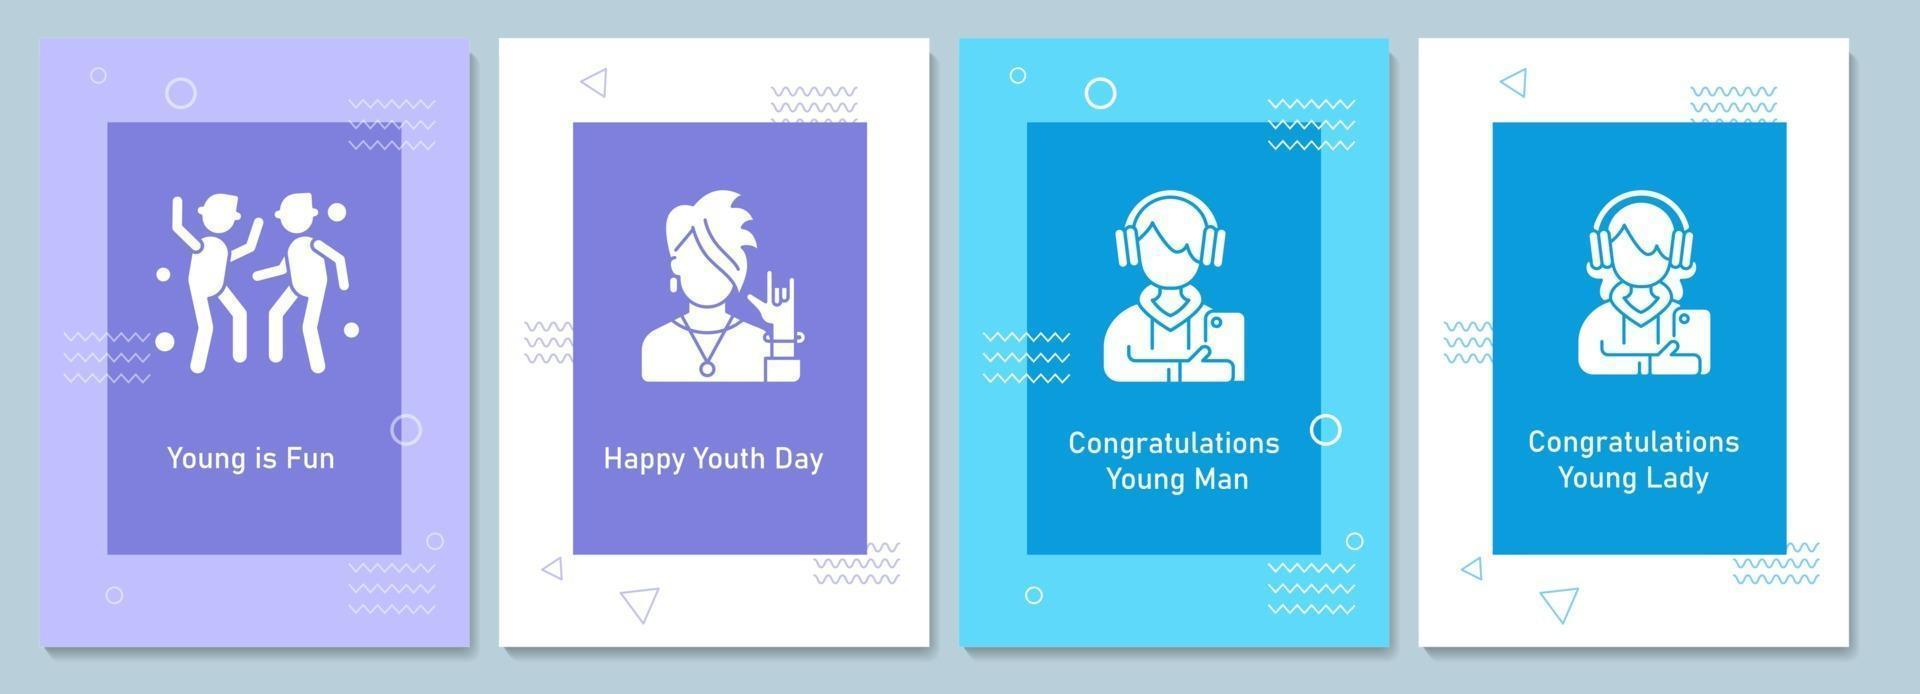 världens ungdomsdag firande gratulationskort med glyph ikonelementuppsättning vektor